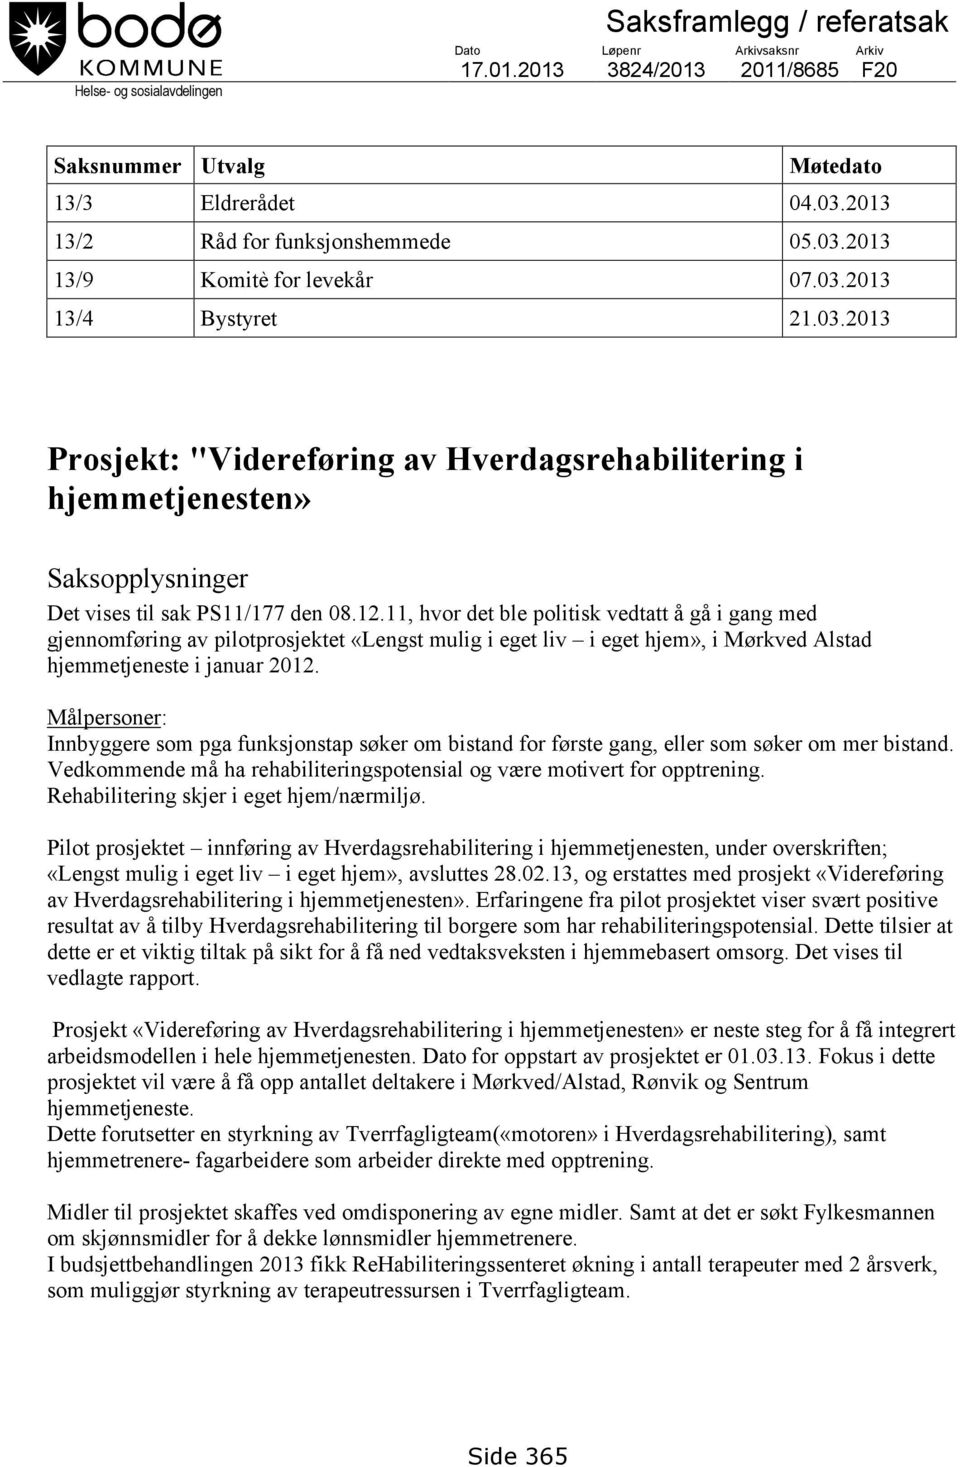 12.11, hvor det ble politisk vedtatt å gå i gang med gjennomføring av pilotprosjektet «Lengst mulig i eget liv i eget hjem», i Mørkved Alstad hjemmetjeneste i januar 2012.